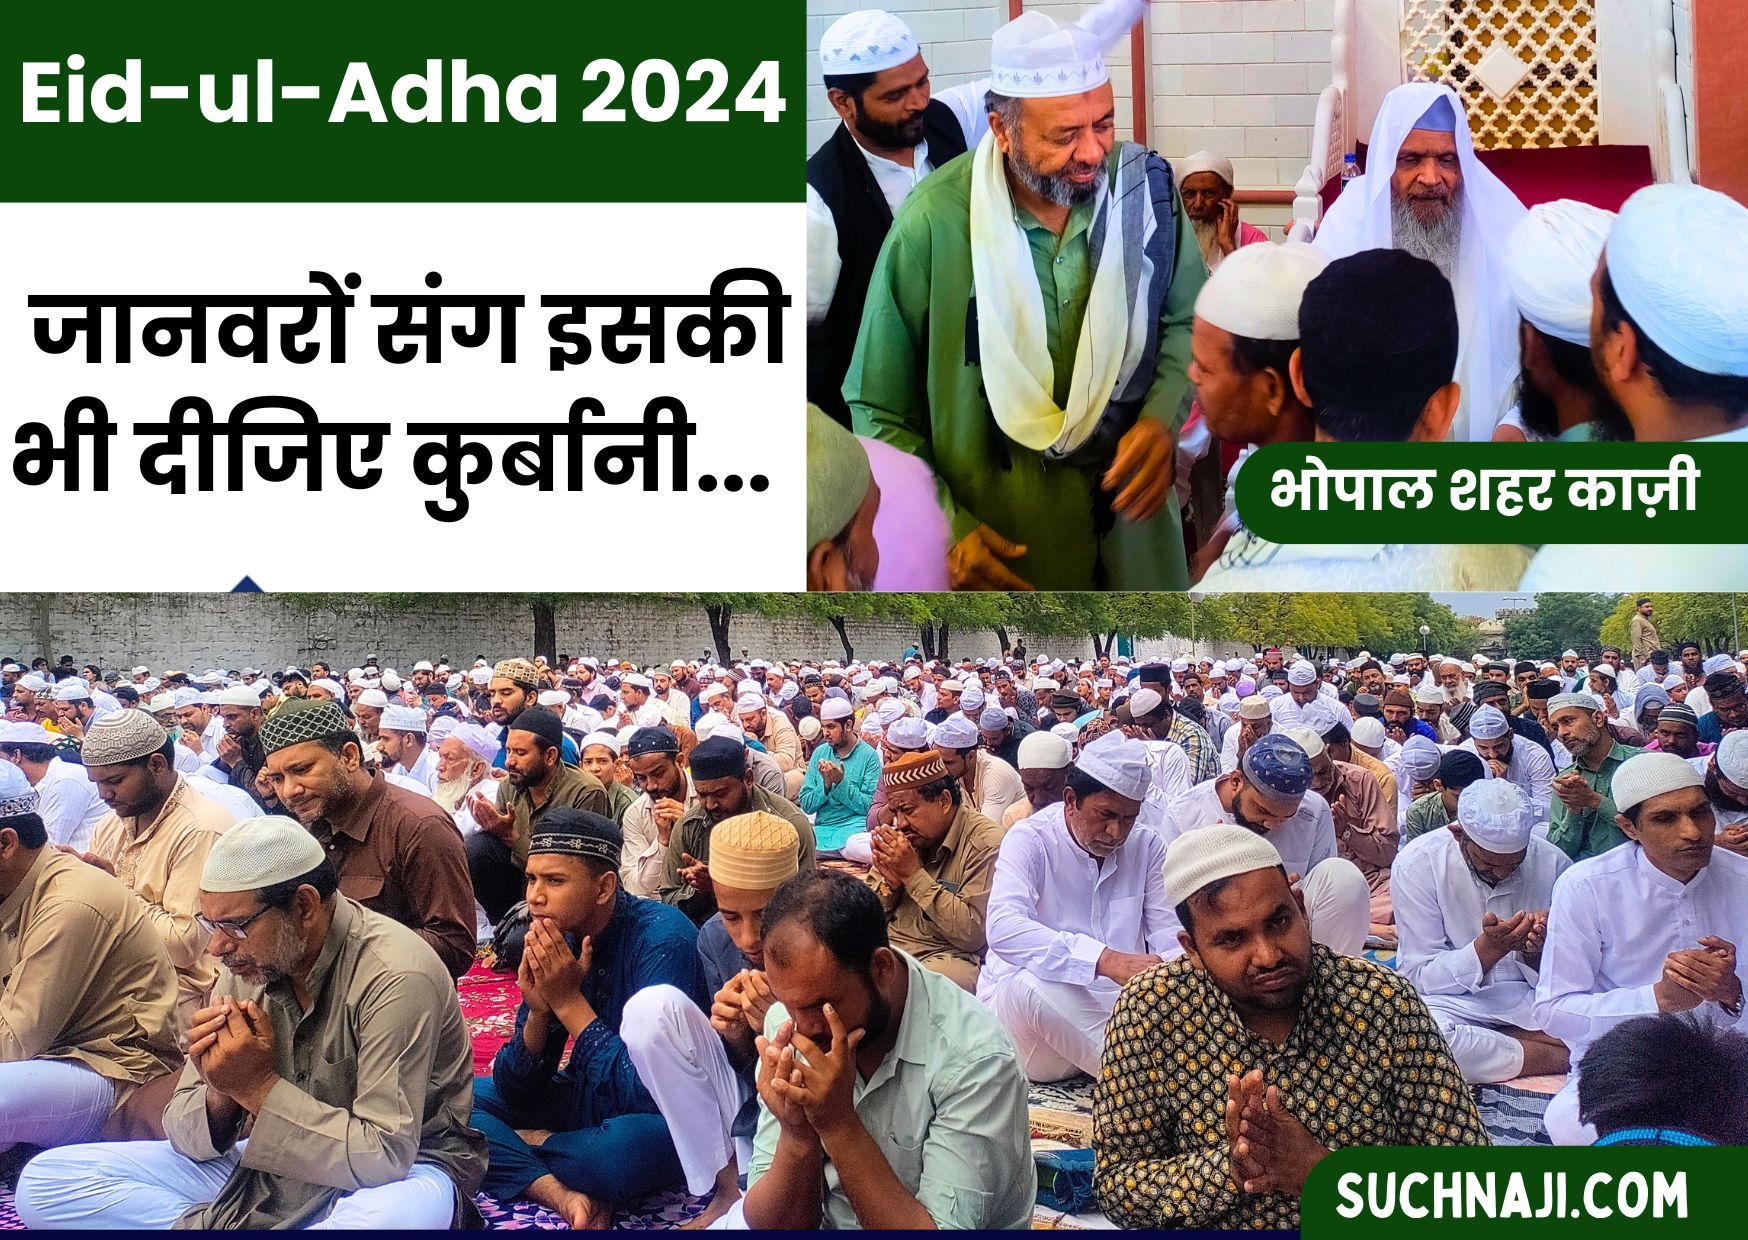 Eid ul-Adha 2024: जानवरों के साथ लालच, दहेज, बुराइयां और साफ-सफाई के लिए दीजिए कुर्बानी